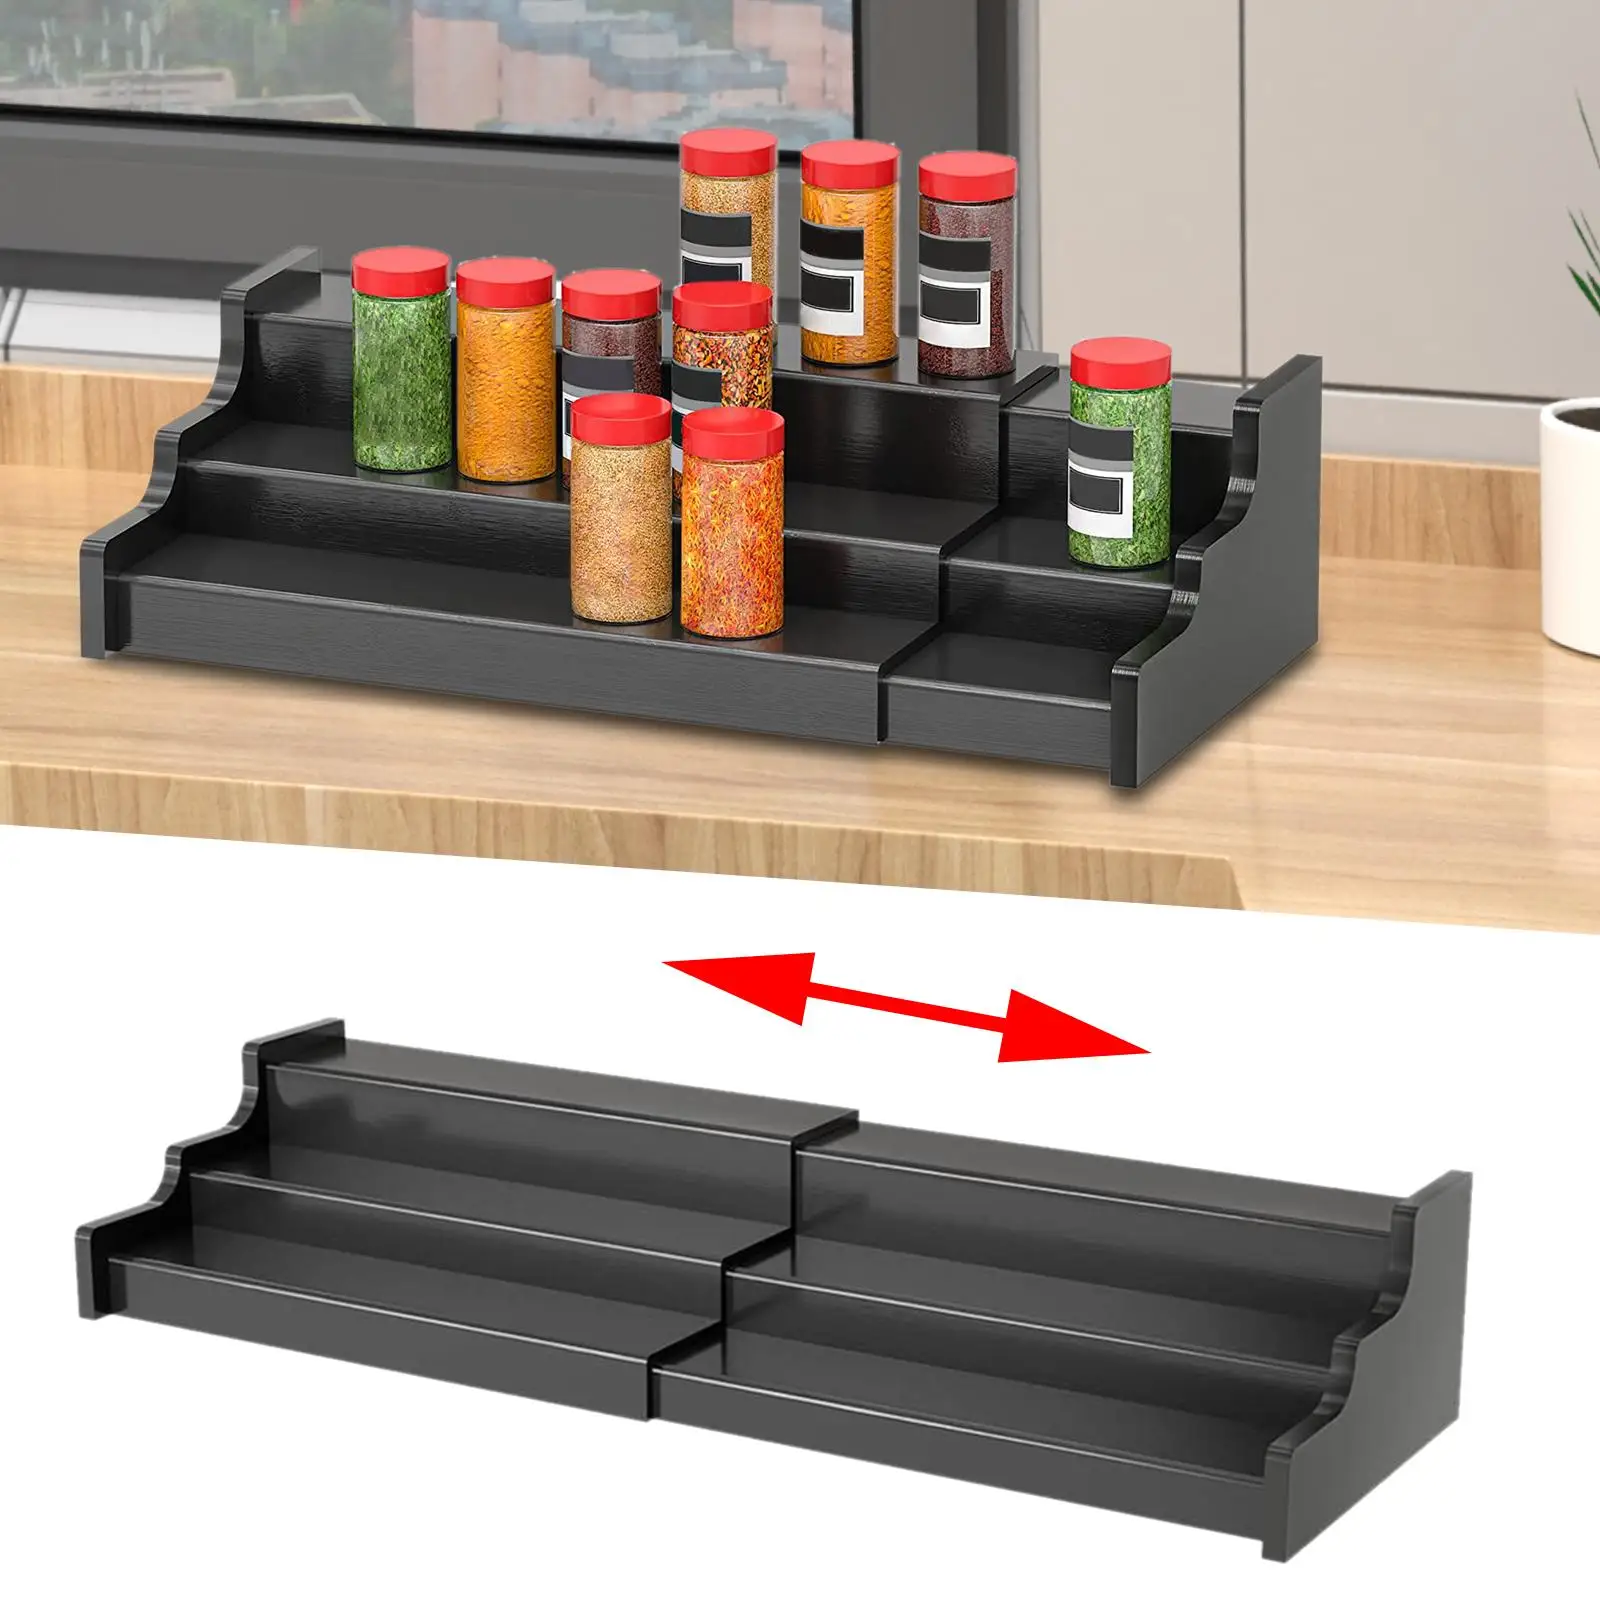 Spice Jars Rack Seasoning Bottle Storage Holder Ladder 3 Tier Display Kitchen Organizer for Home Pantry Countertop Kitchen